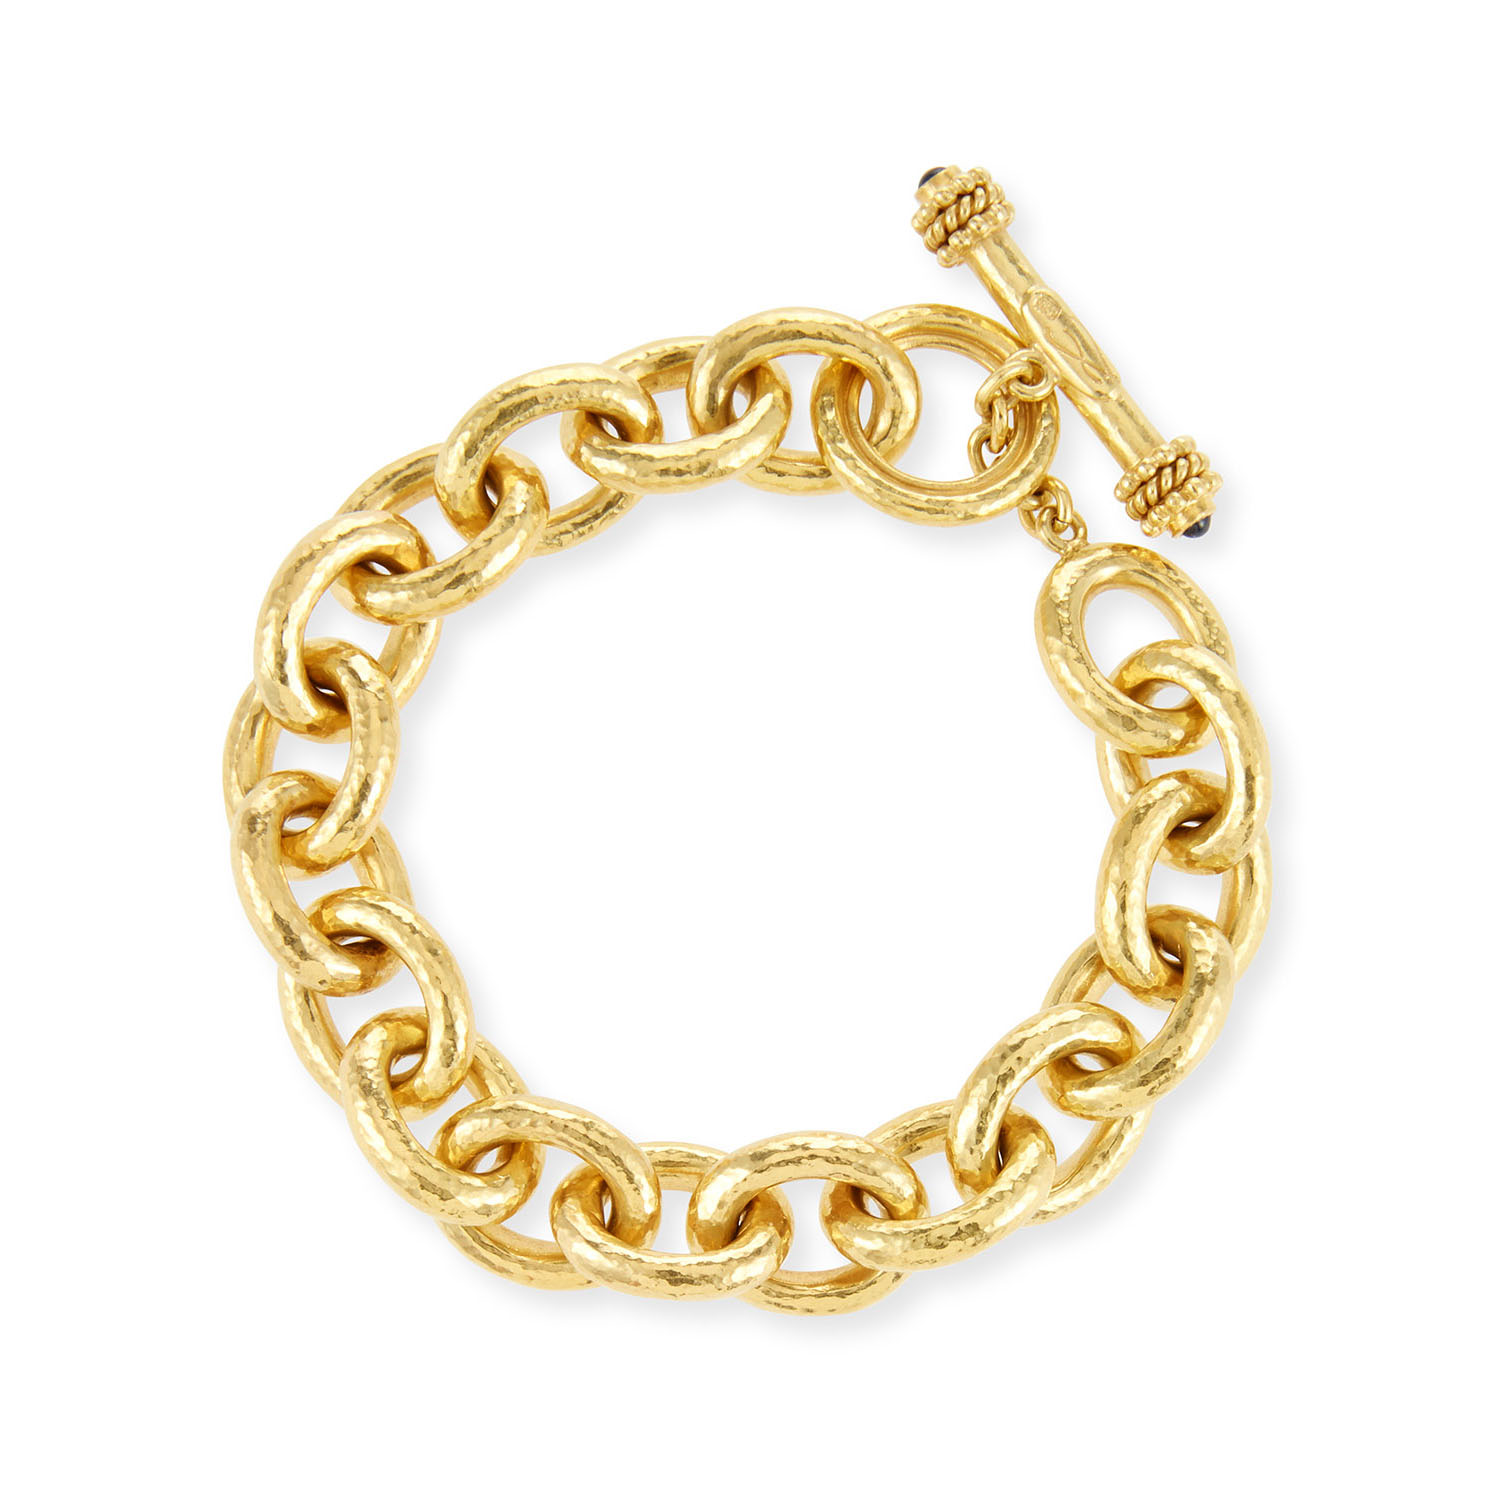 Vânzare cu ridicata OEM/ODM Bijuterii Brățară personalizată din aur de 19k realizată cu producătorul dvs. OEM de bijuterii de design